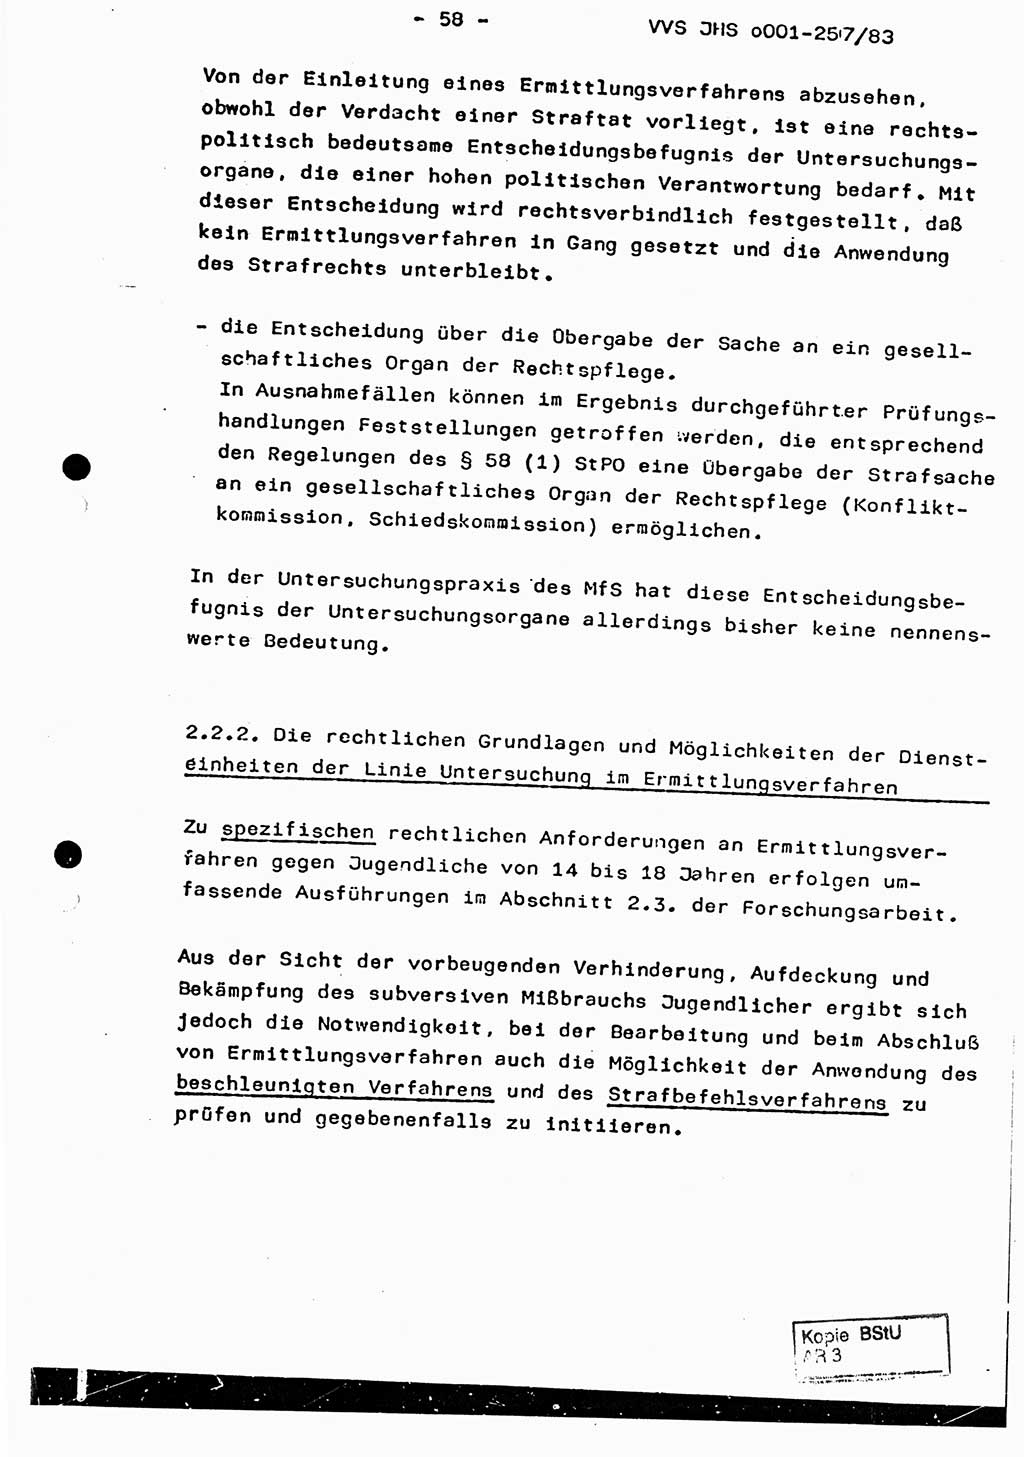 Dissertation, Oberst Helmut Lubas (BV Mdg.), Oberstleutnant Manfred Eschberger (HA IX), Oberleutnant Hans-Jürgen Ludwig (JHS), Ministerium für Staatssicherheit (MfS) [Deutsche Demokratische Republik (DDR)], Juristische Hochschule (JHS), Vertrauliche Verschlußsache (VVS) o001-257/83, Potsdam 1983, Seite 58 (Diss. MfS DDR JHS VVS o001-257/83 1983, S. 58)